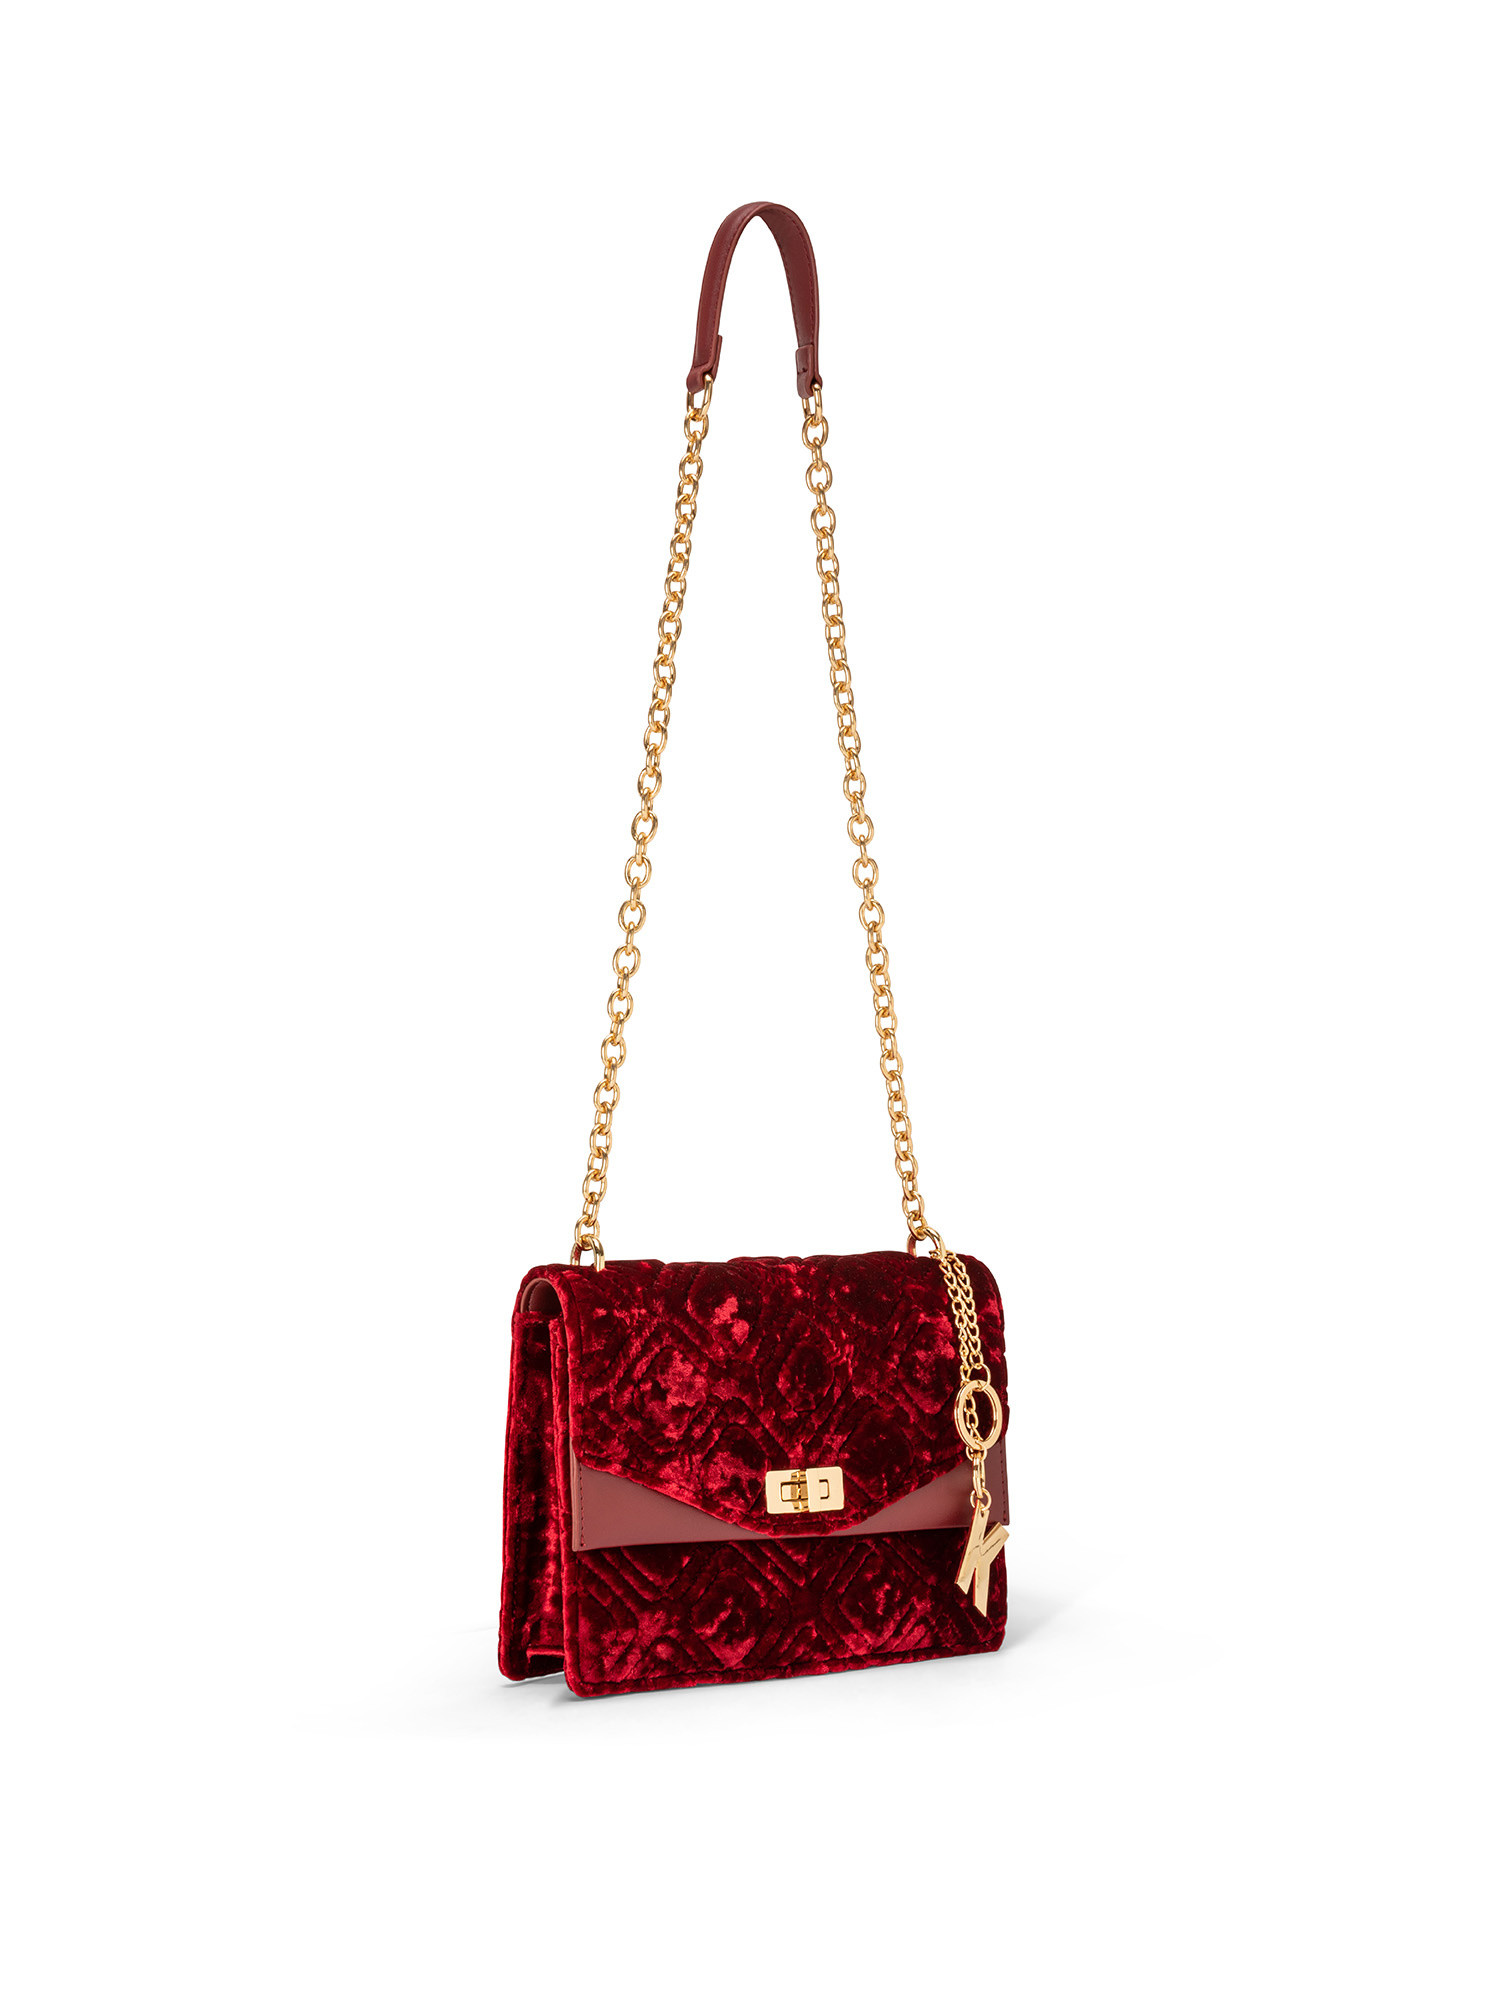 Koan - Velvet shoulder bag, Red, large image number 1